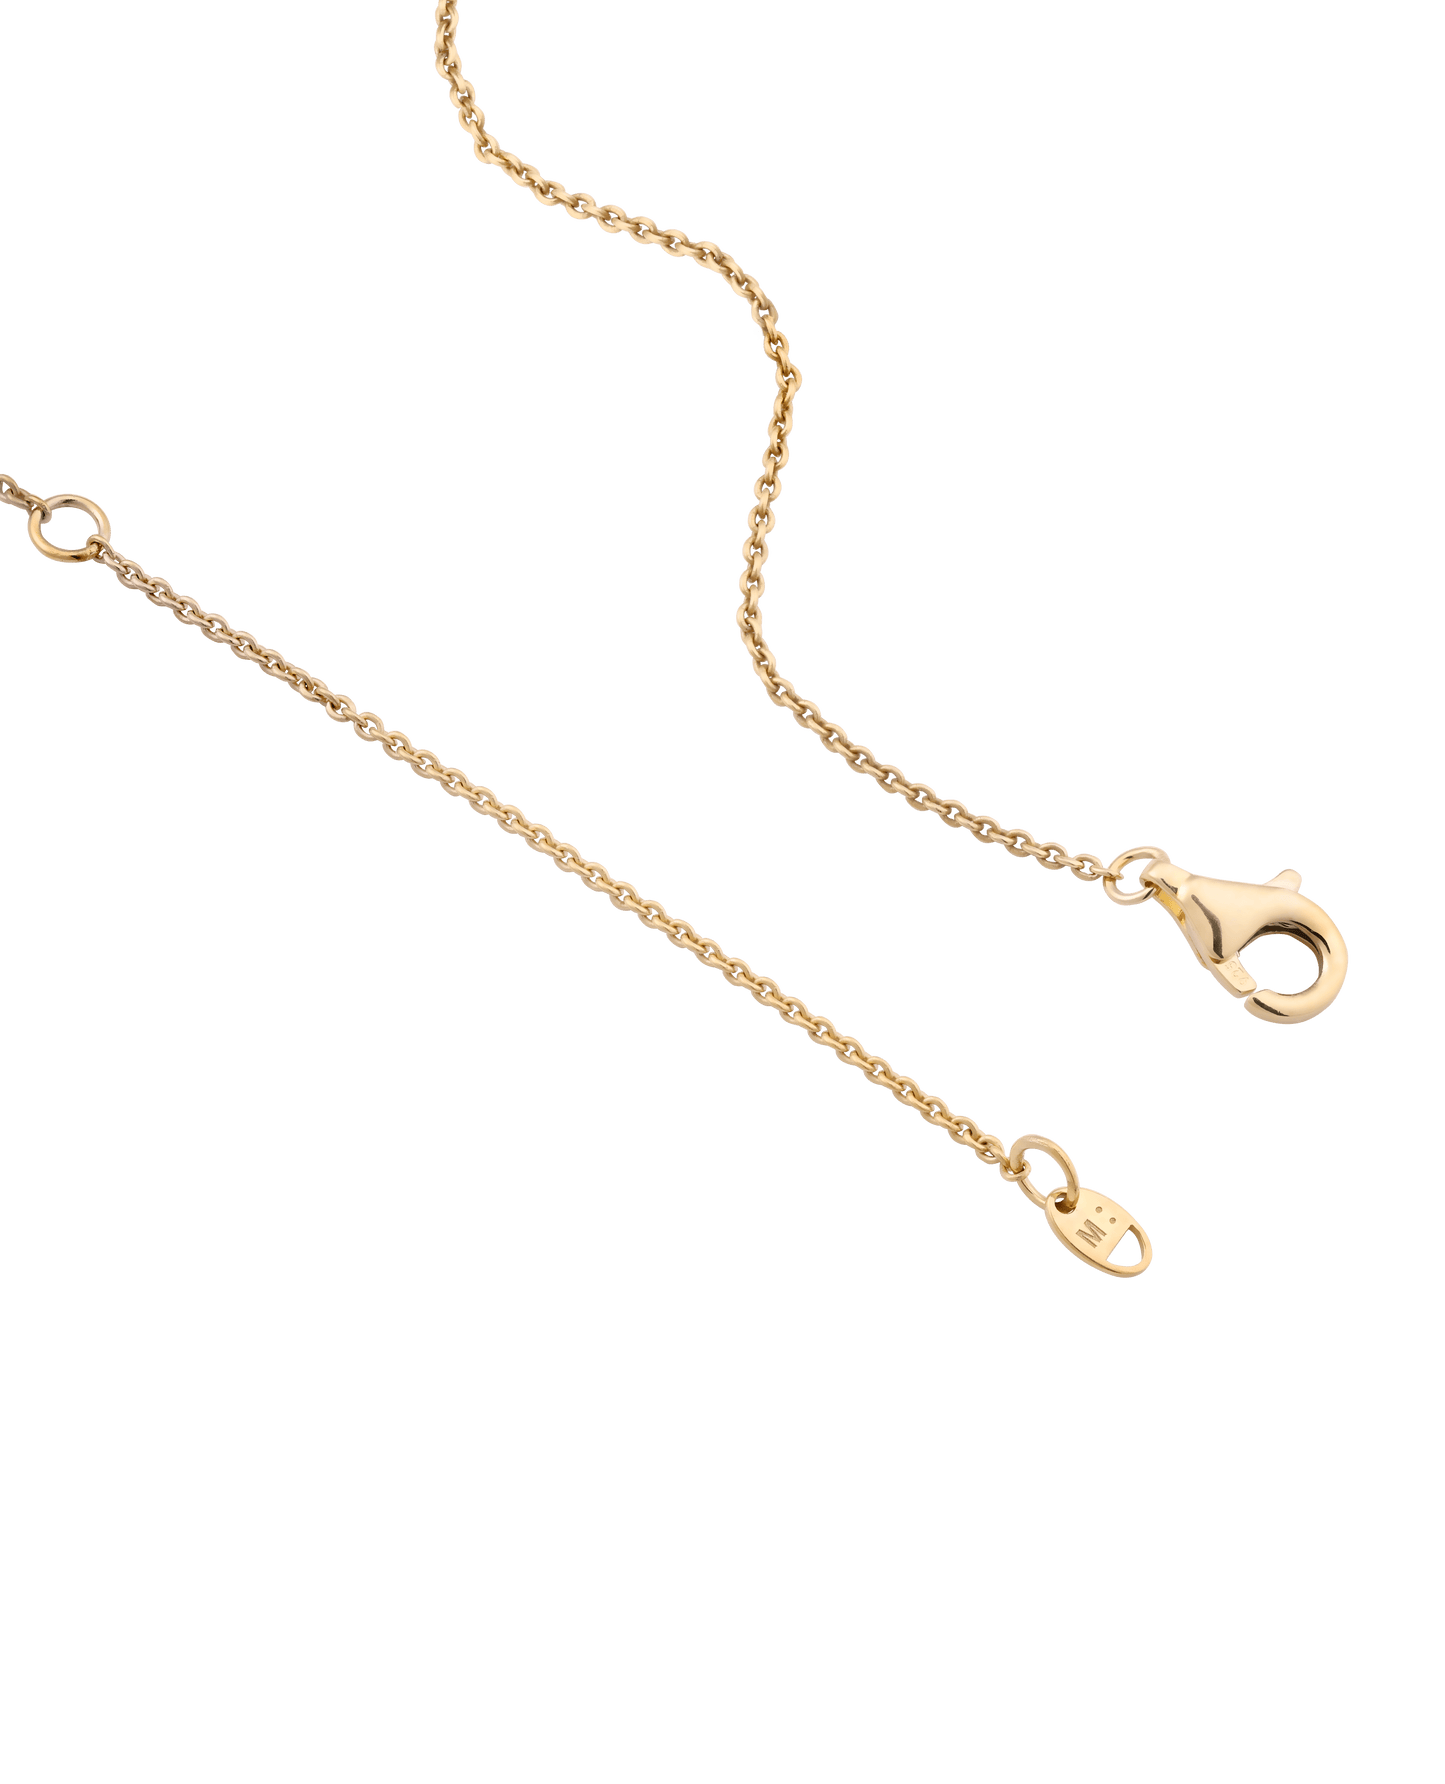 Diamond Drop Initial Necklace - 18K Gold Vermeil Necklaces magal-dev 